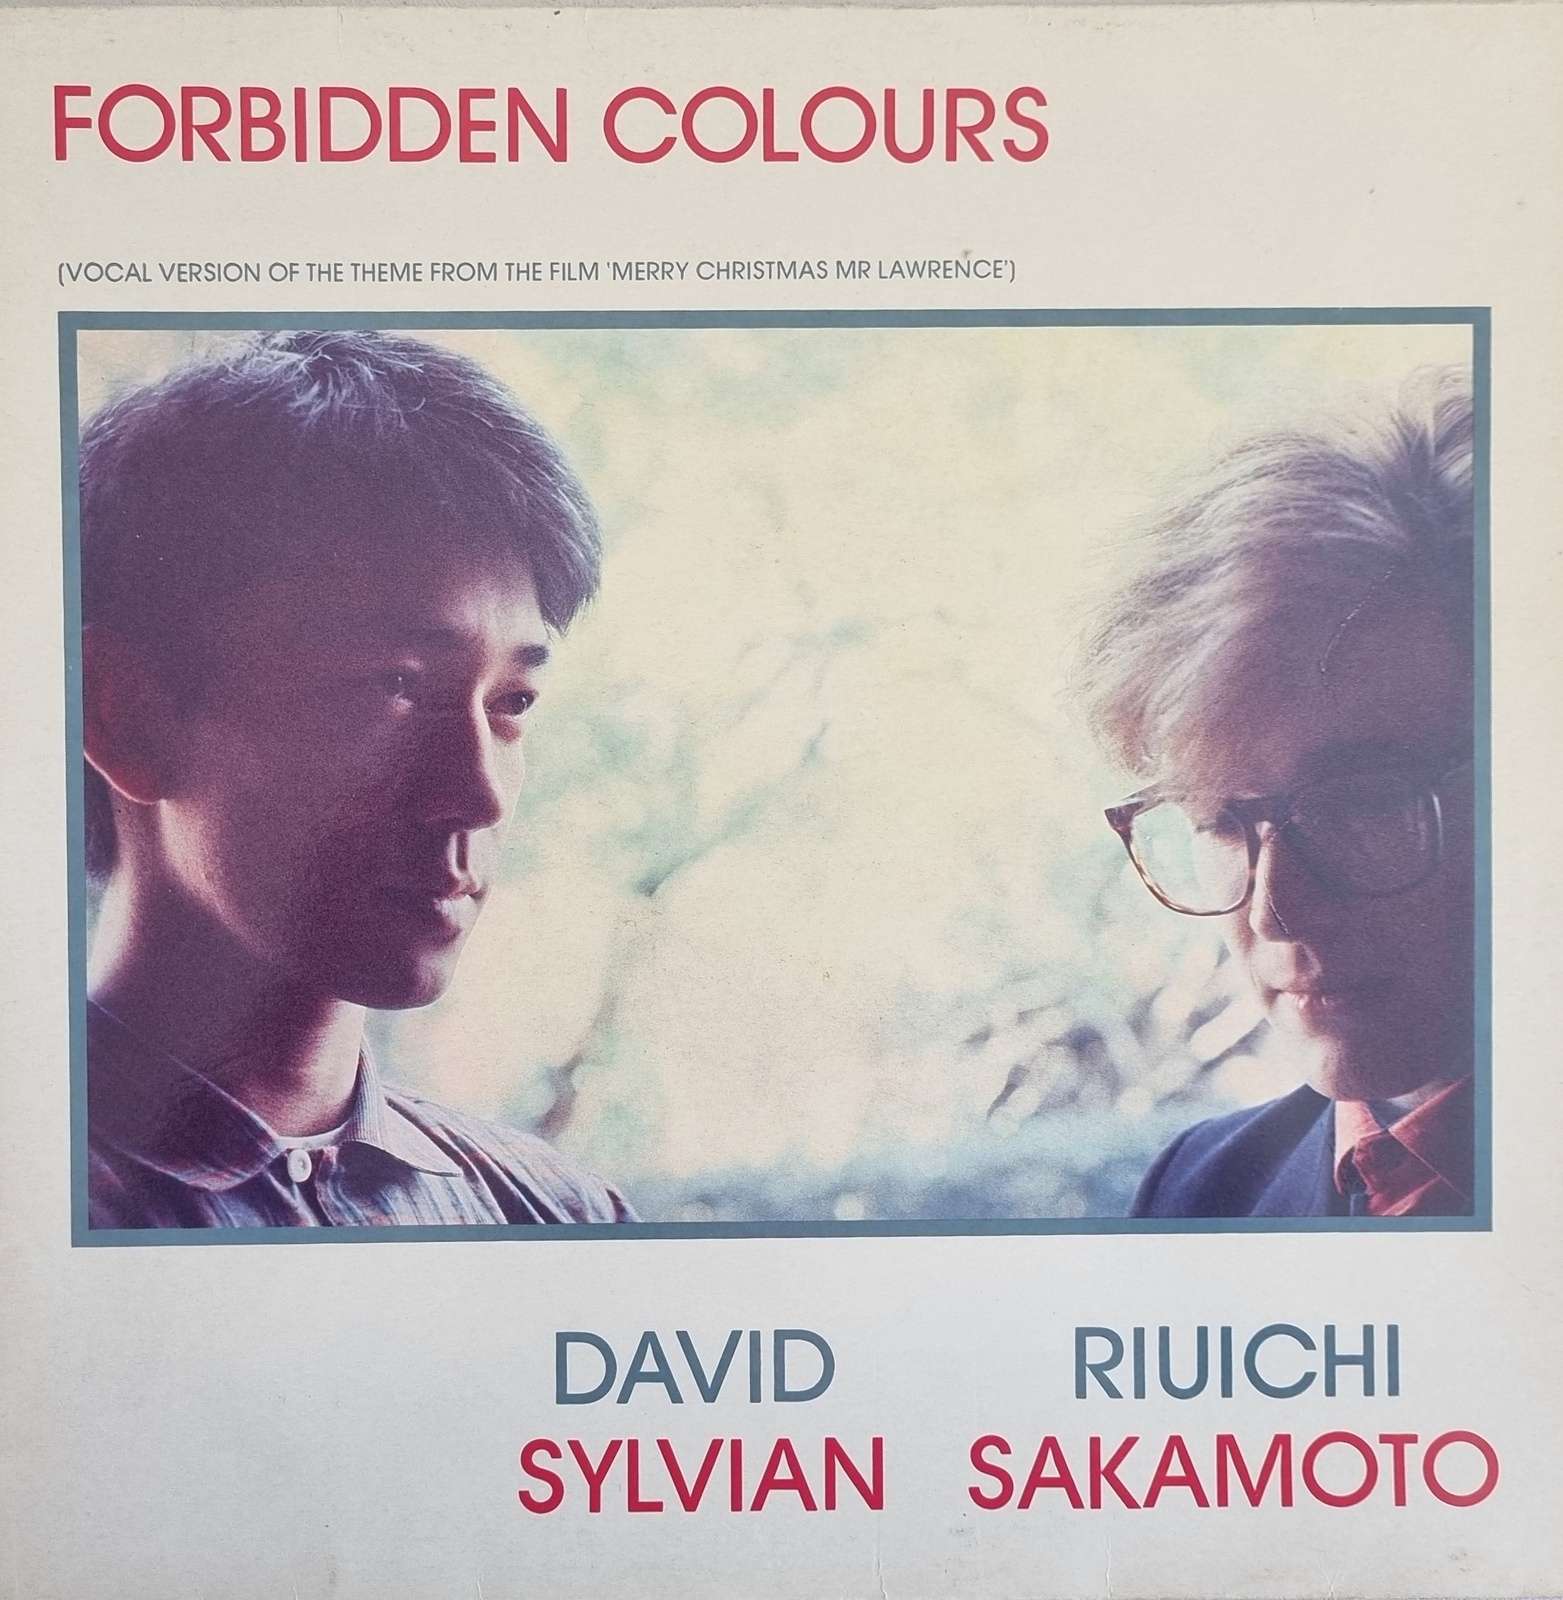 David Sylvian Riuichi Sakamoto - Forbidden Colours